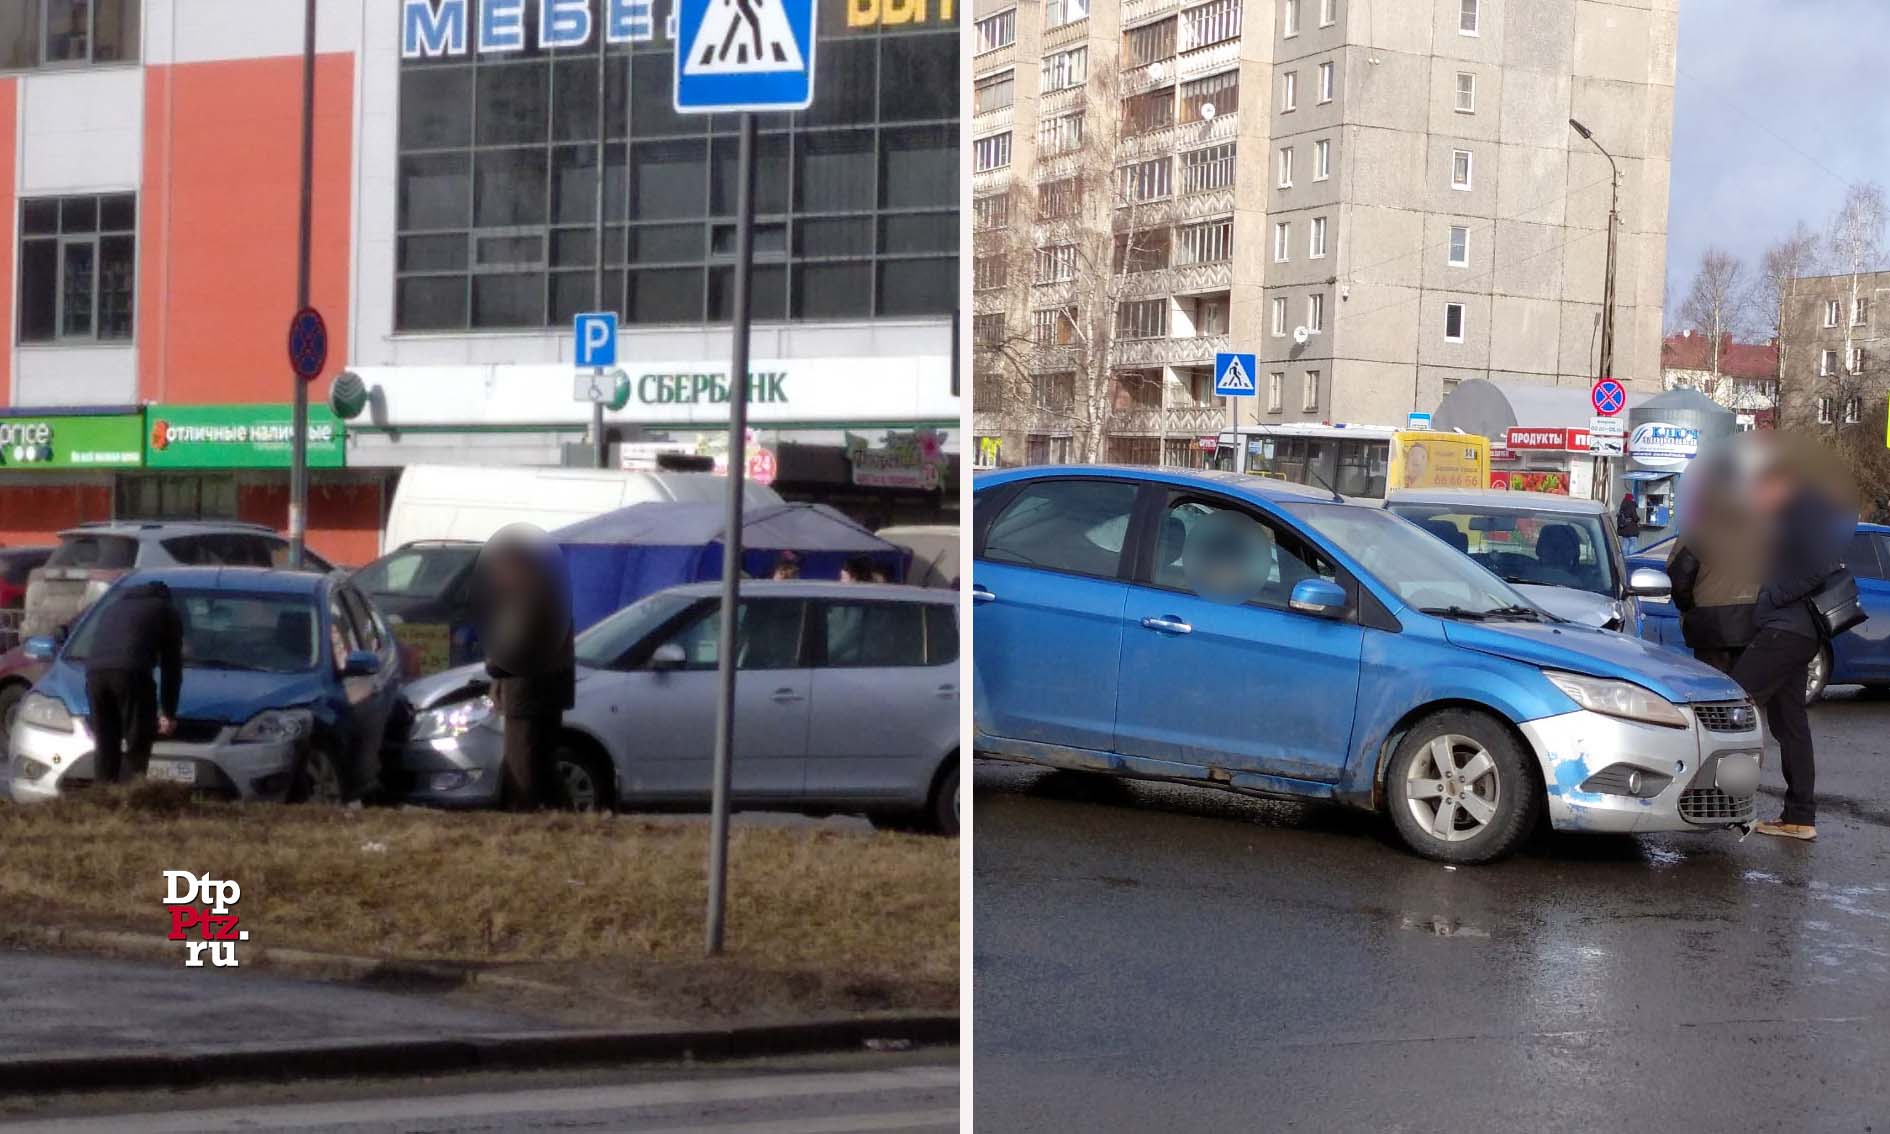 Петрозаводск, 13 марта 2020 года, 10-12.   ДТП с участием легковых автомобилей Шкода (Skoda Fabia) и Форд (Ford Focus) произошло на пересечении Октябрьского проспекта и улицы Мелентьевой.